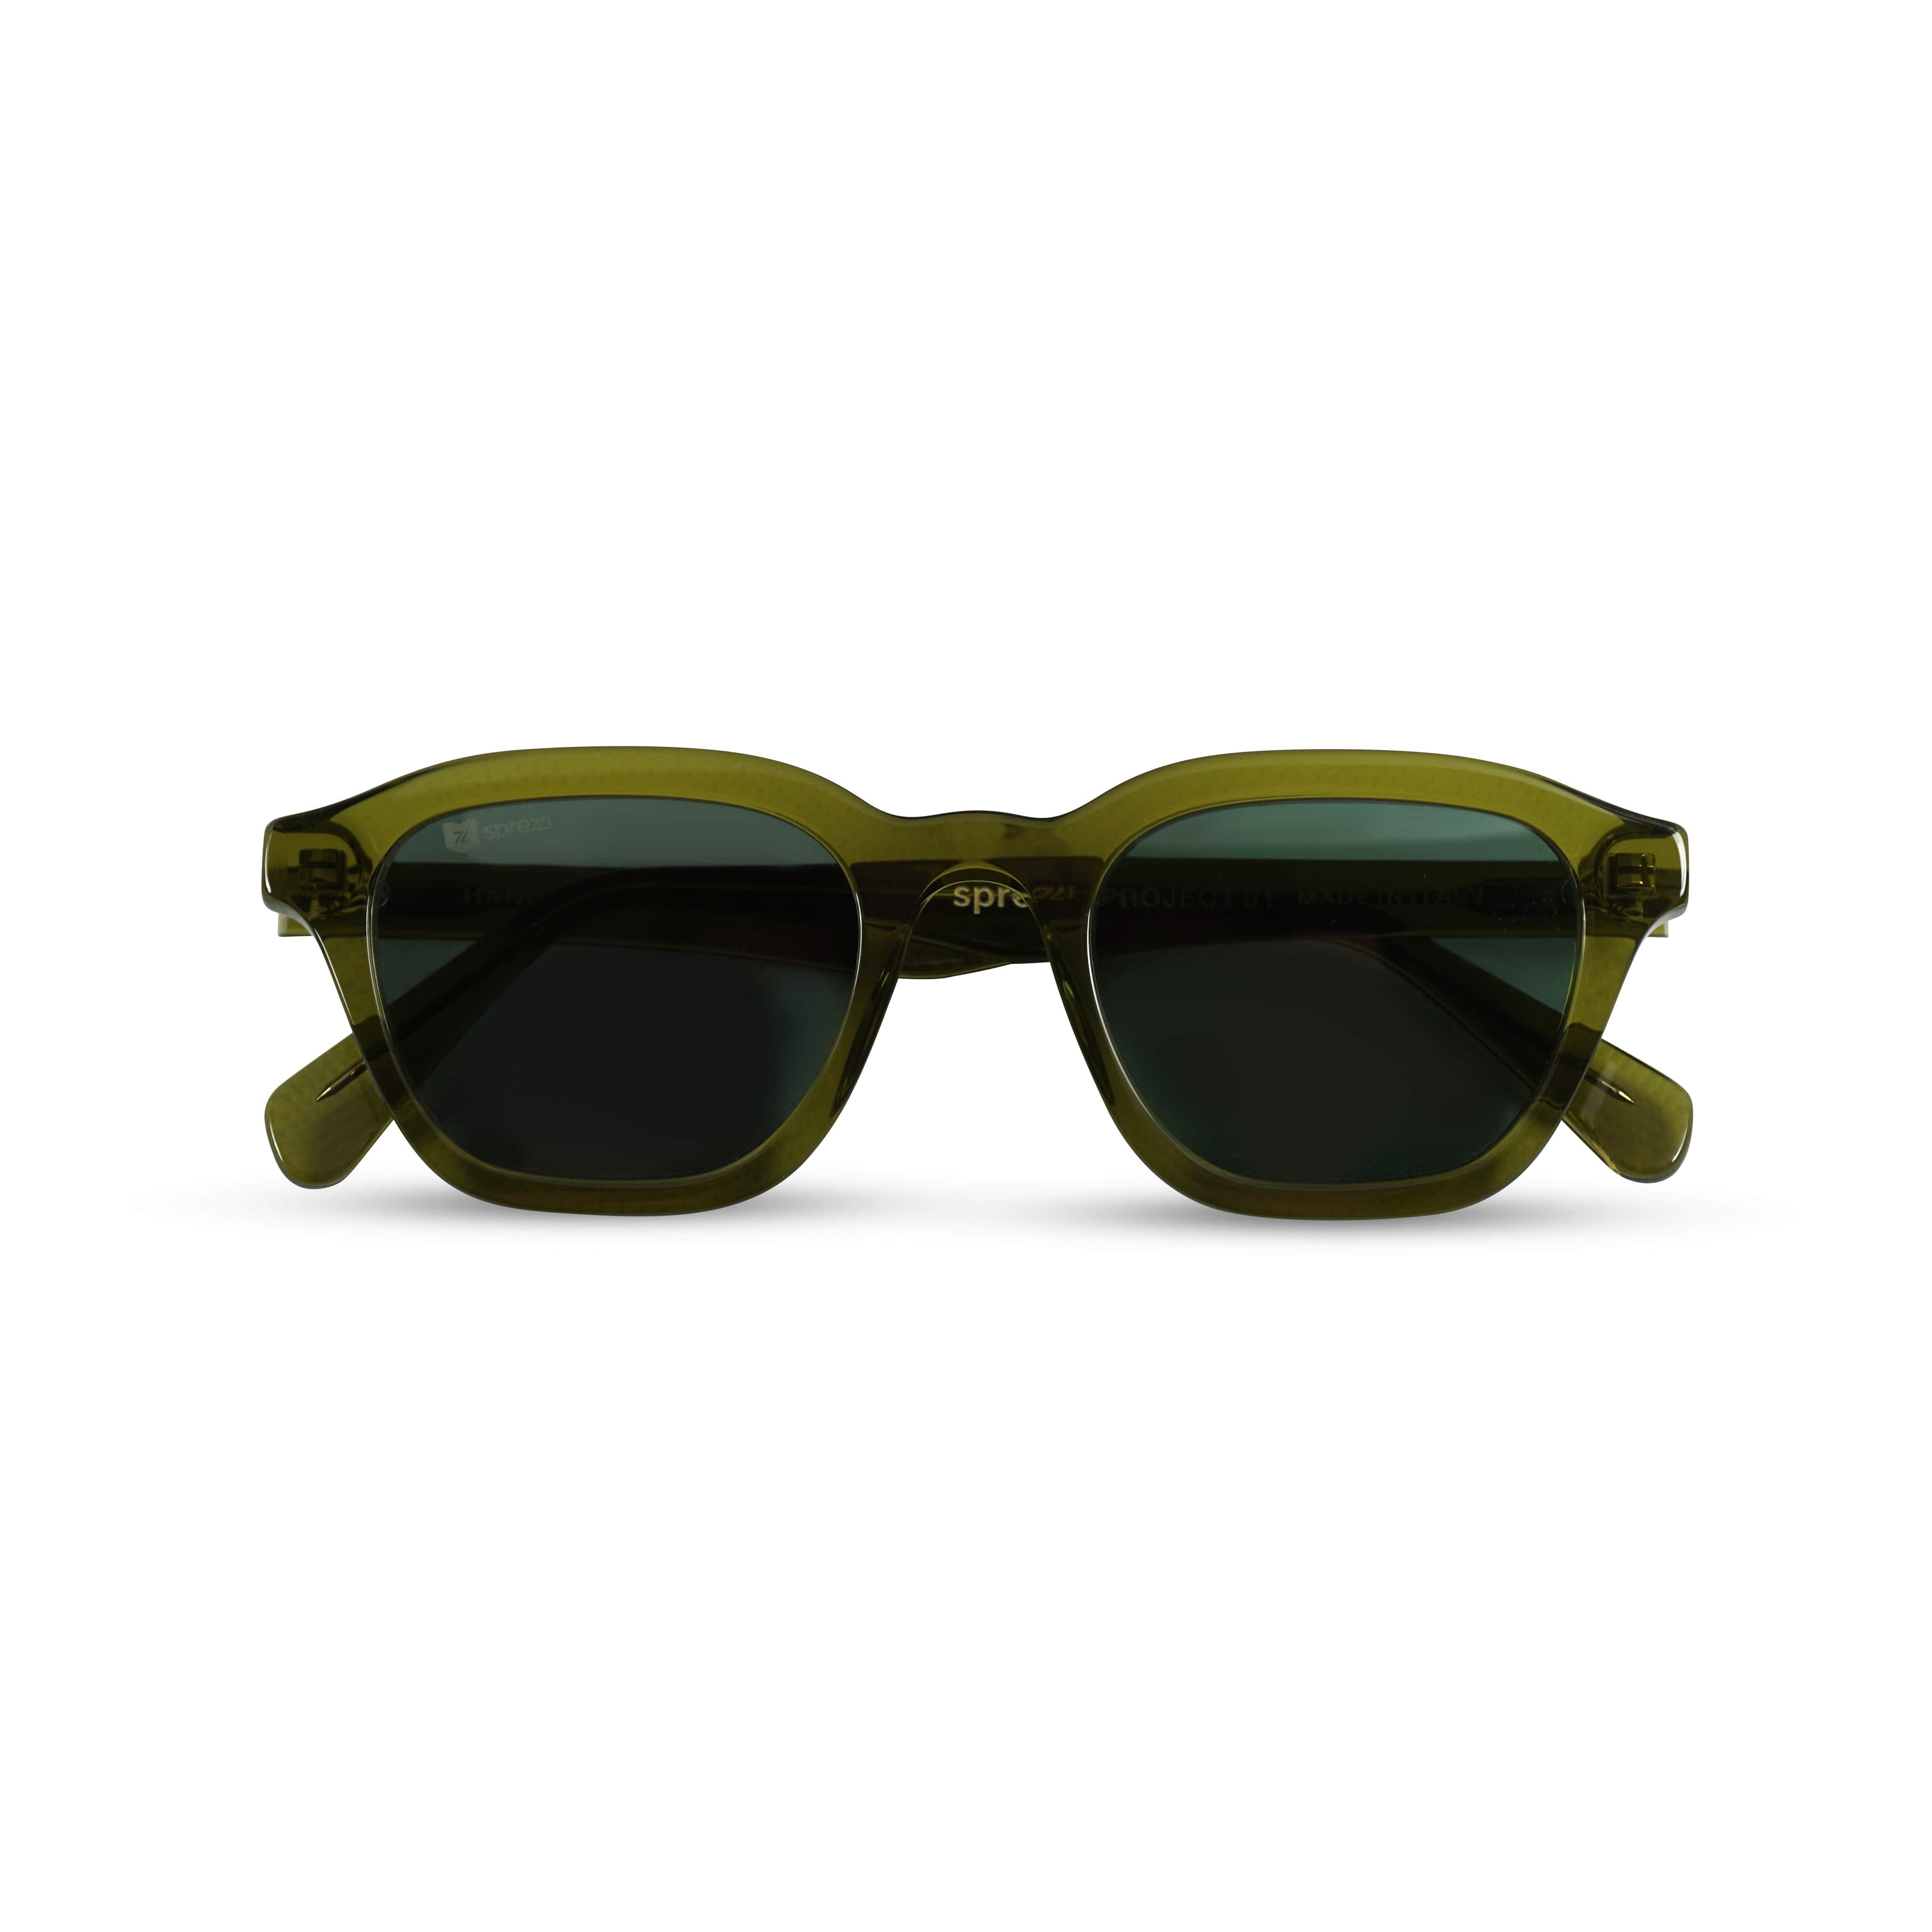 Sprezzi Fashion Sonnenbrille Herren Sonnenbrille Zeitloses Design UV Schutz Premium Acetat (inkl. Brillenetui, Reisetasche und Putztuch geliefert, inkl. Brillenetui, Reisetasche und Putztuch geliefert) CE zertifiziert, UV Schutz, inkl. Reiseetui und Pflegetuch Grün